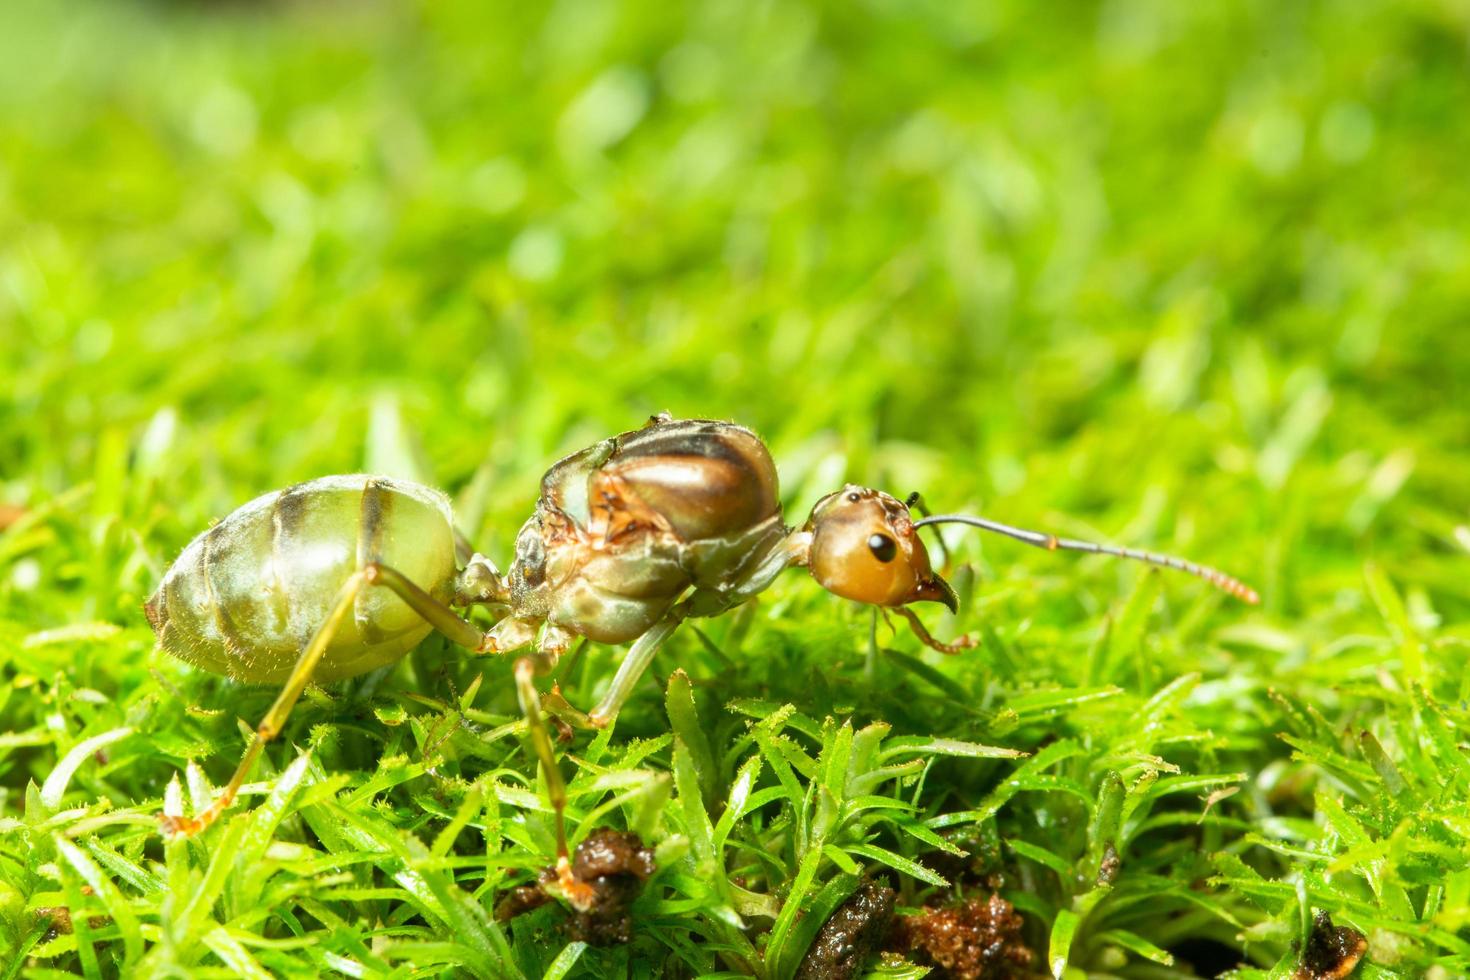 hormiga verde en la hierba foto